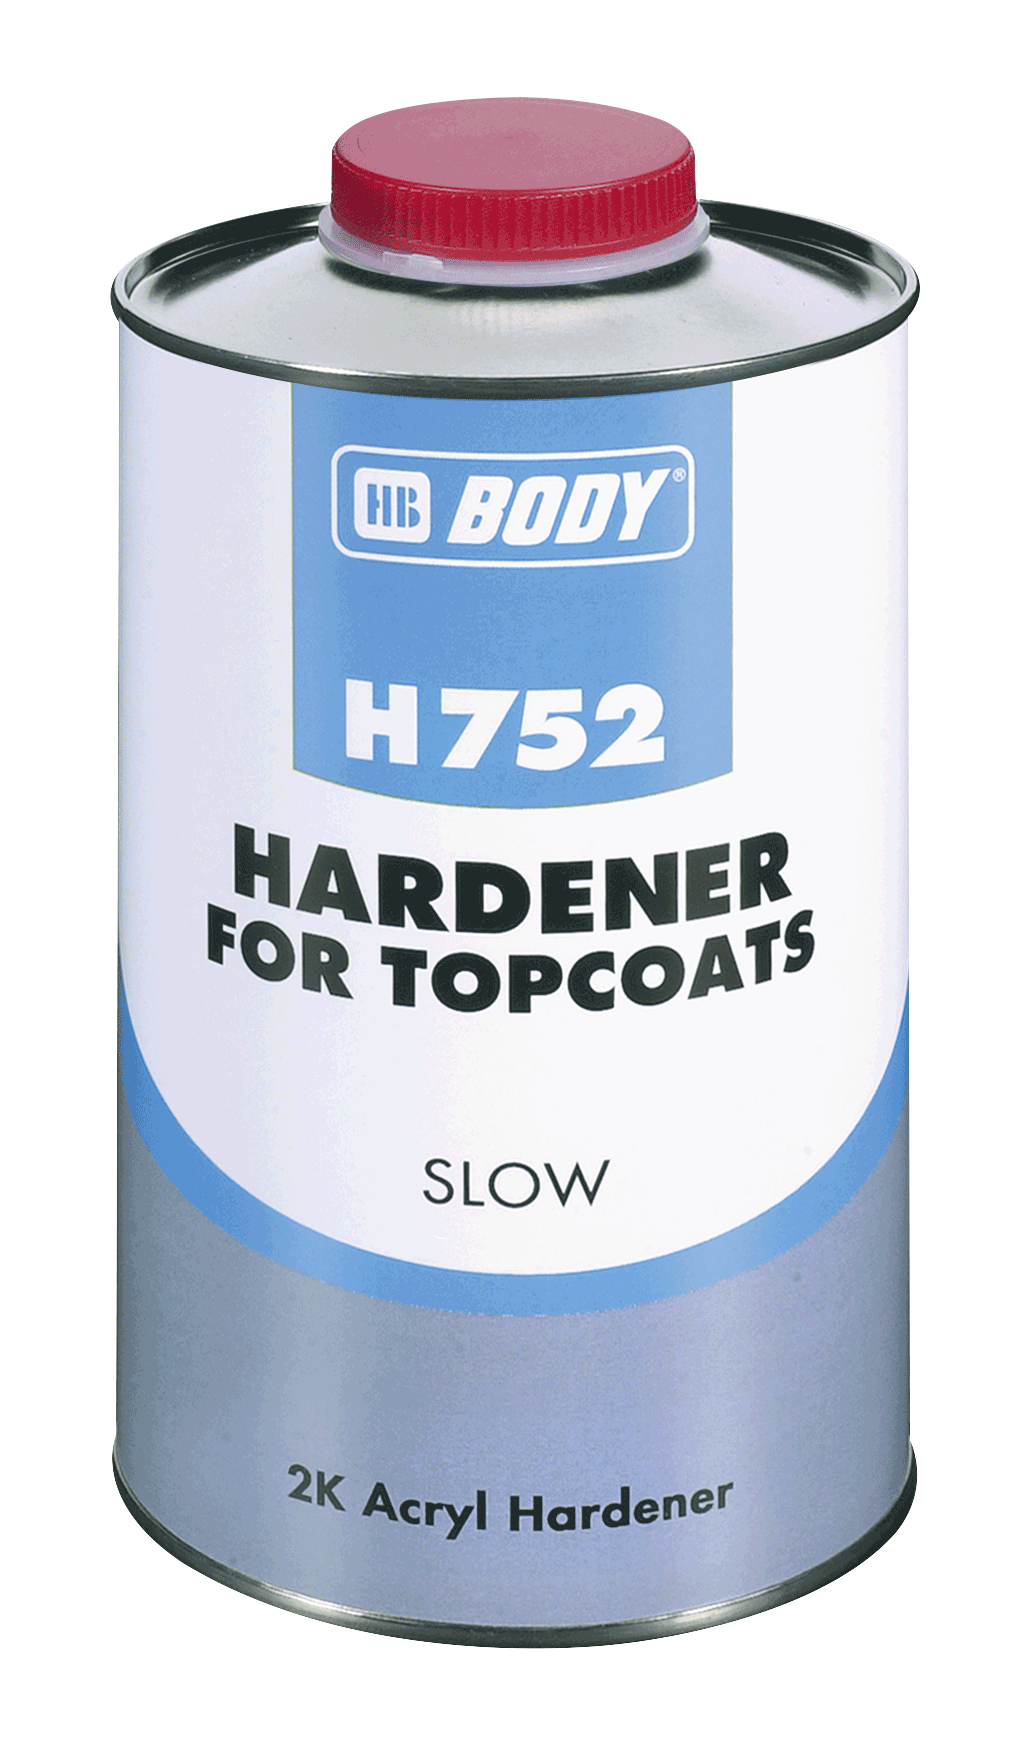 HB BODY Body 752 Hardener slow 1L